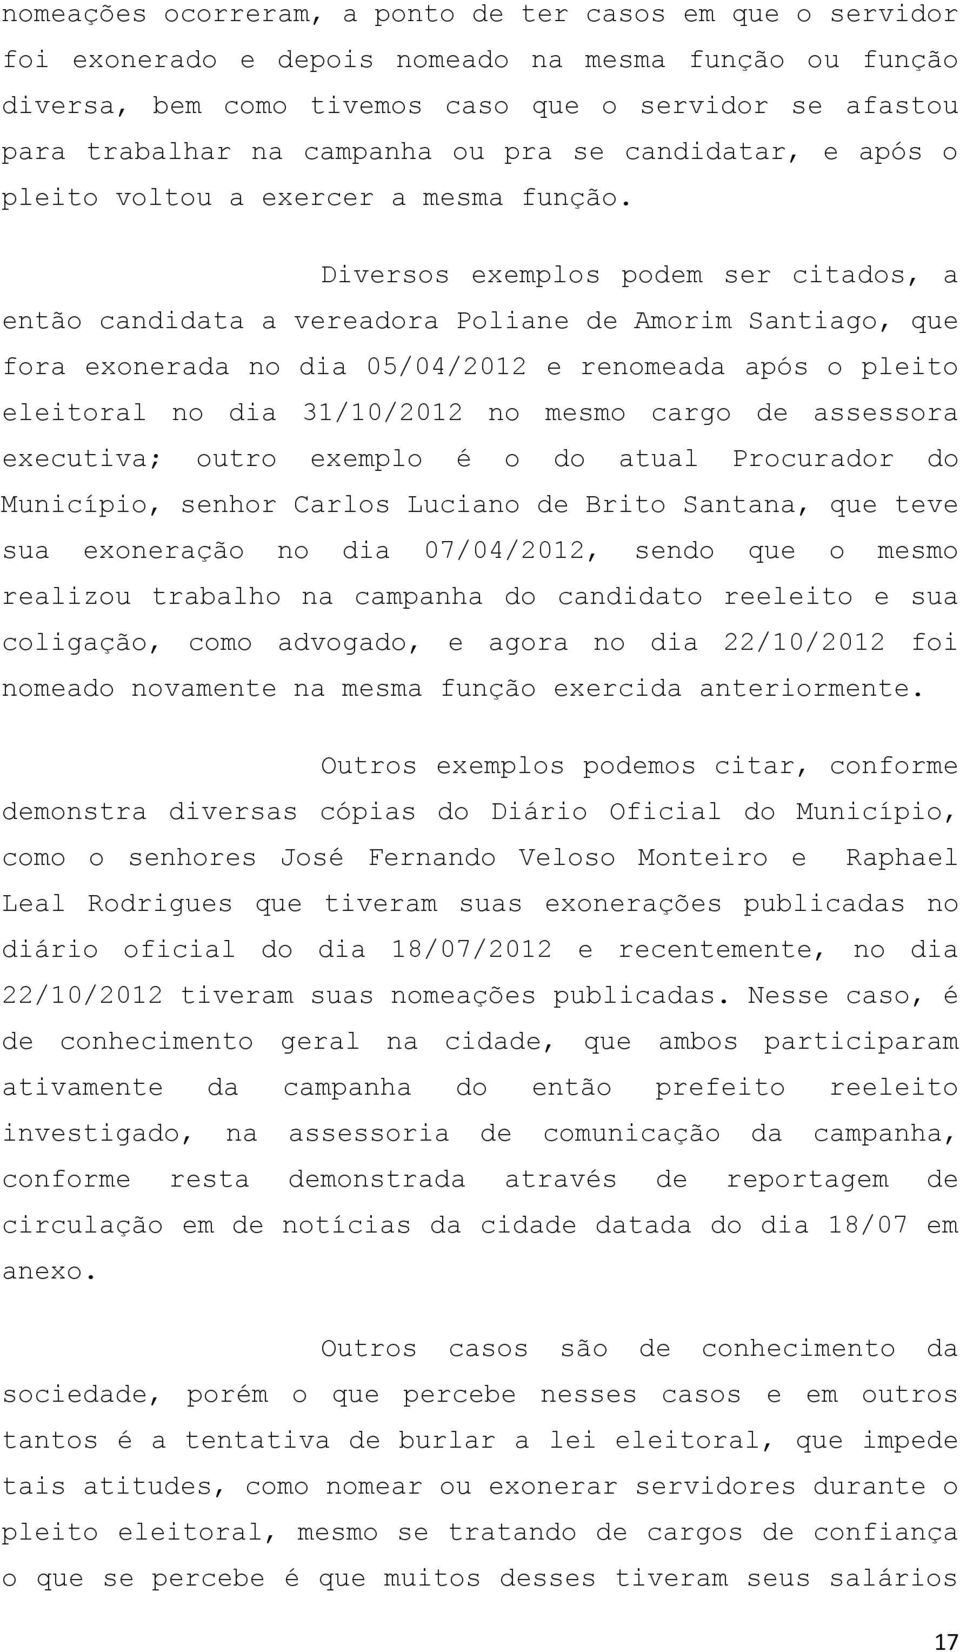 Diversos exemplos podem ser citados, a então candidata a vereadora Poliane de Amorim Santiago, que fora exonerada no dia 05/04/2012 e renomeada após o pleito eleitoral no dia 31/10/2012 no mesmo